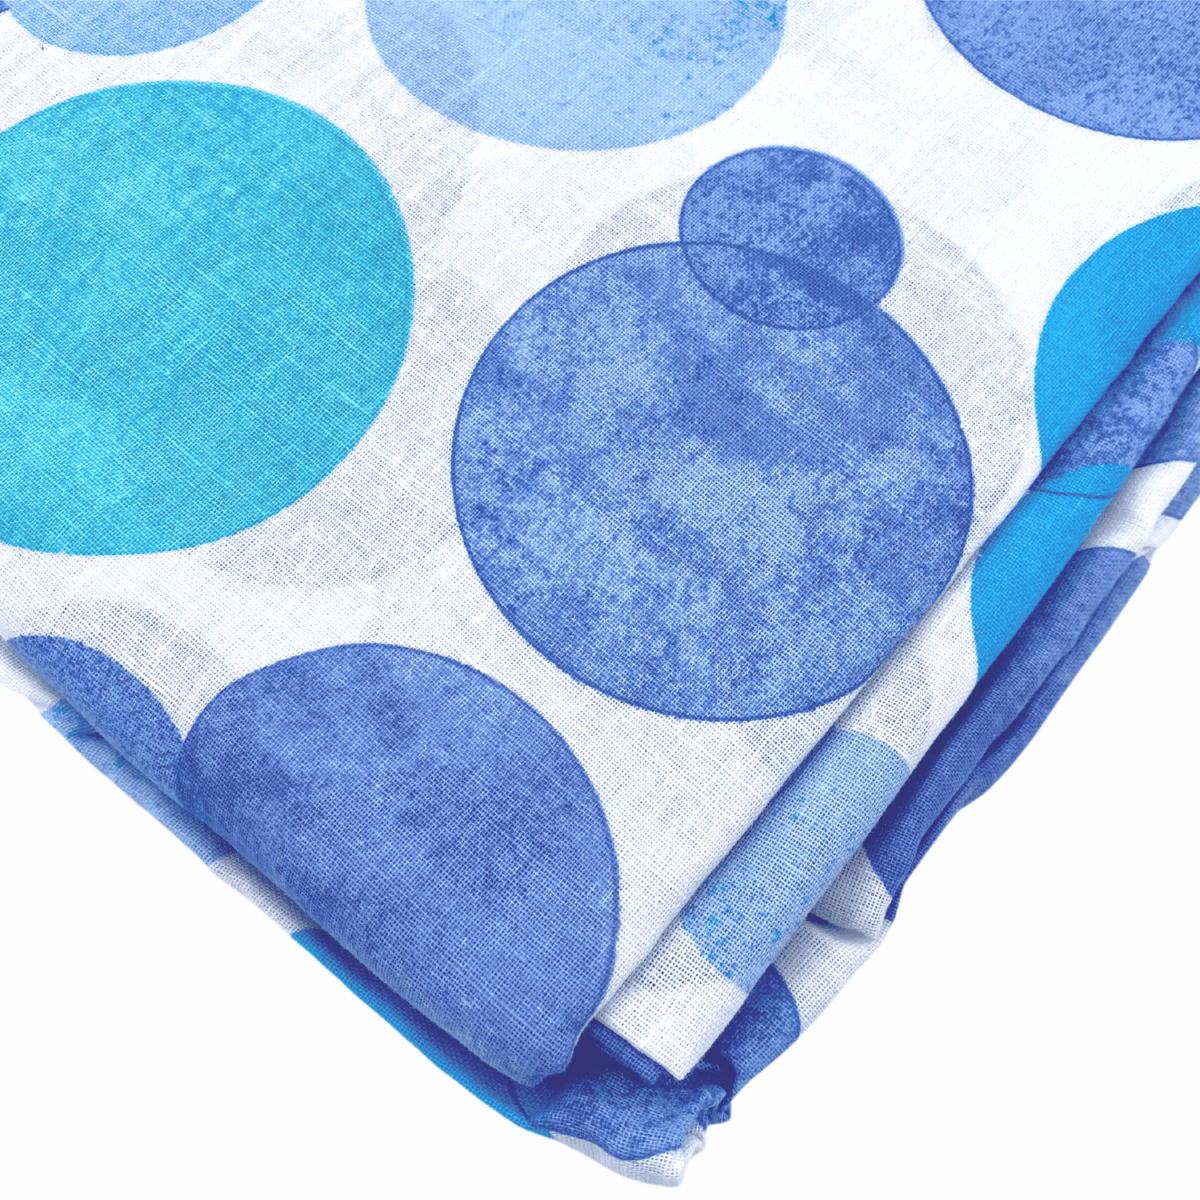 colorado-azzurro-pauline-completo-lenzuola-cotone-turchese-blu-acqua-bianco-dettaglio